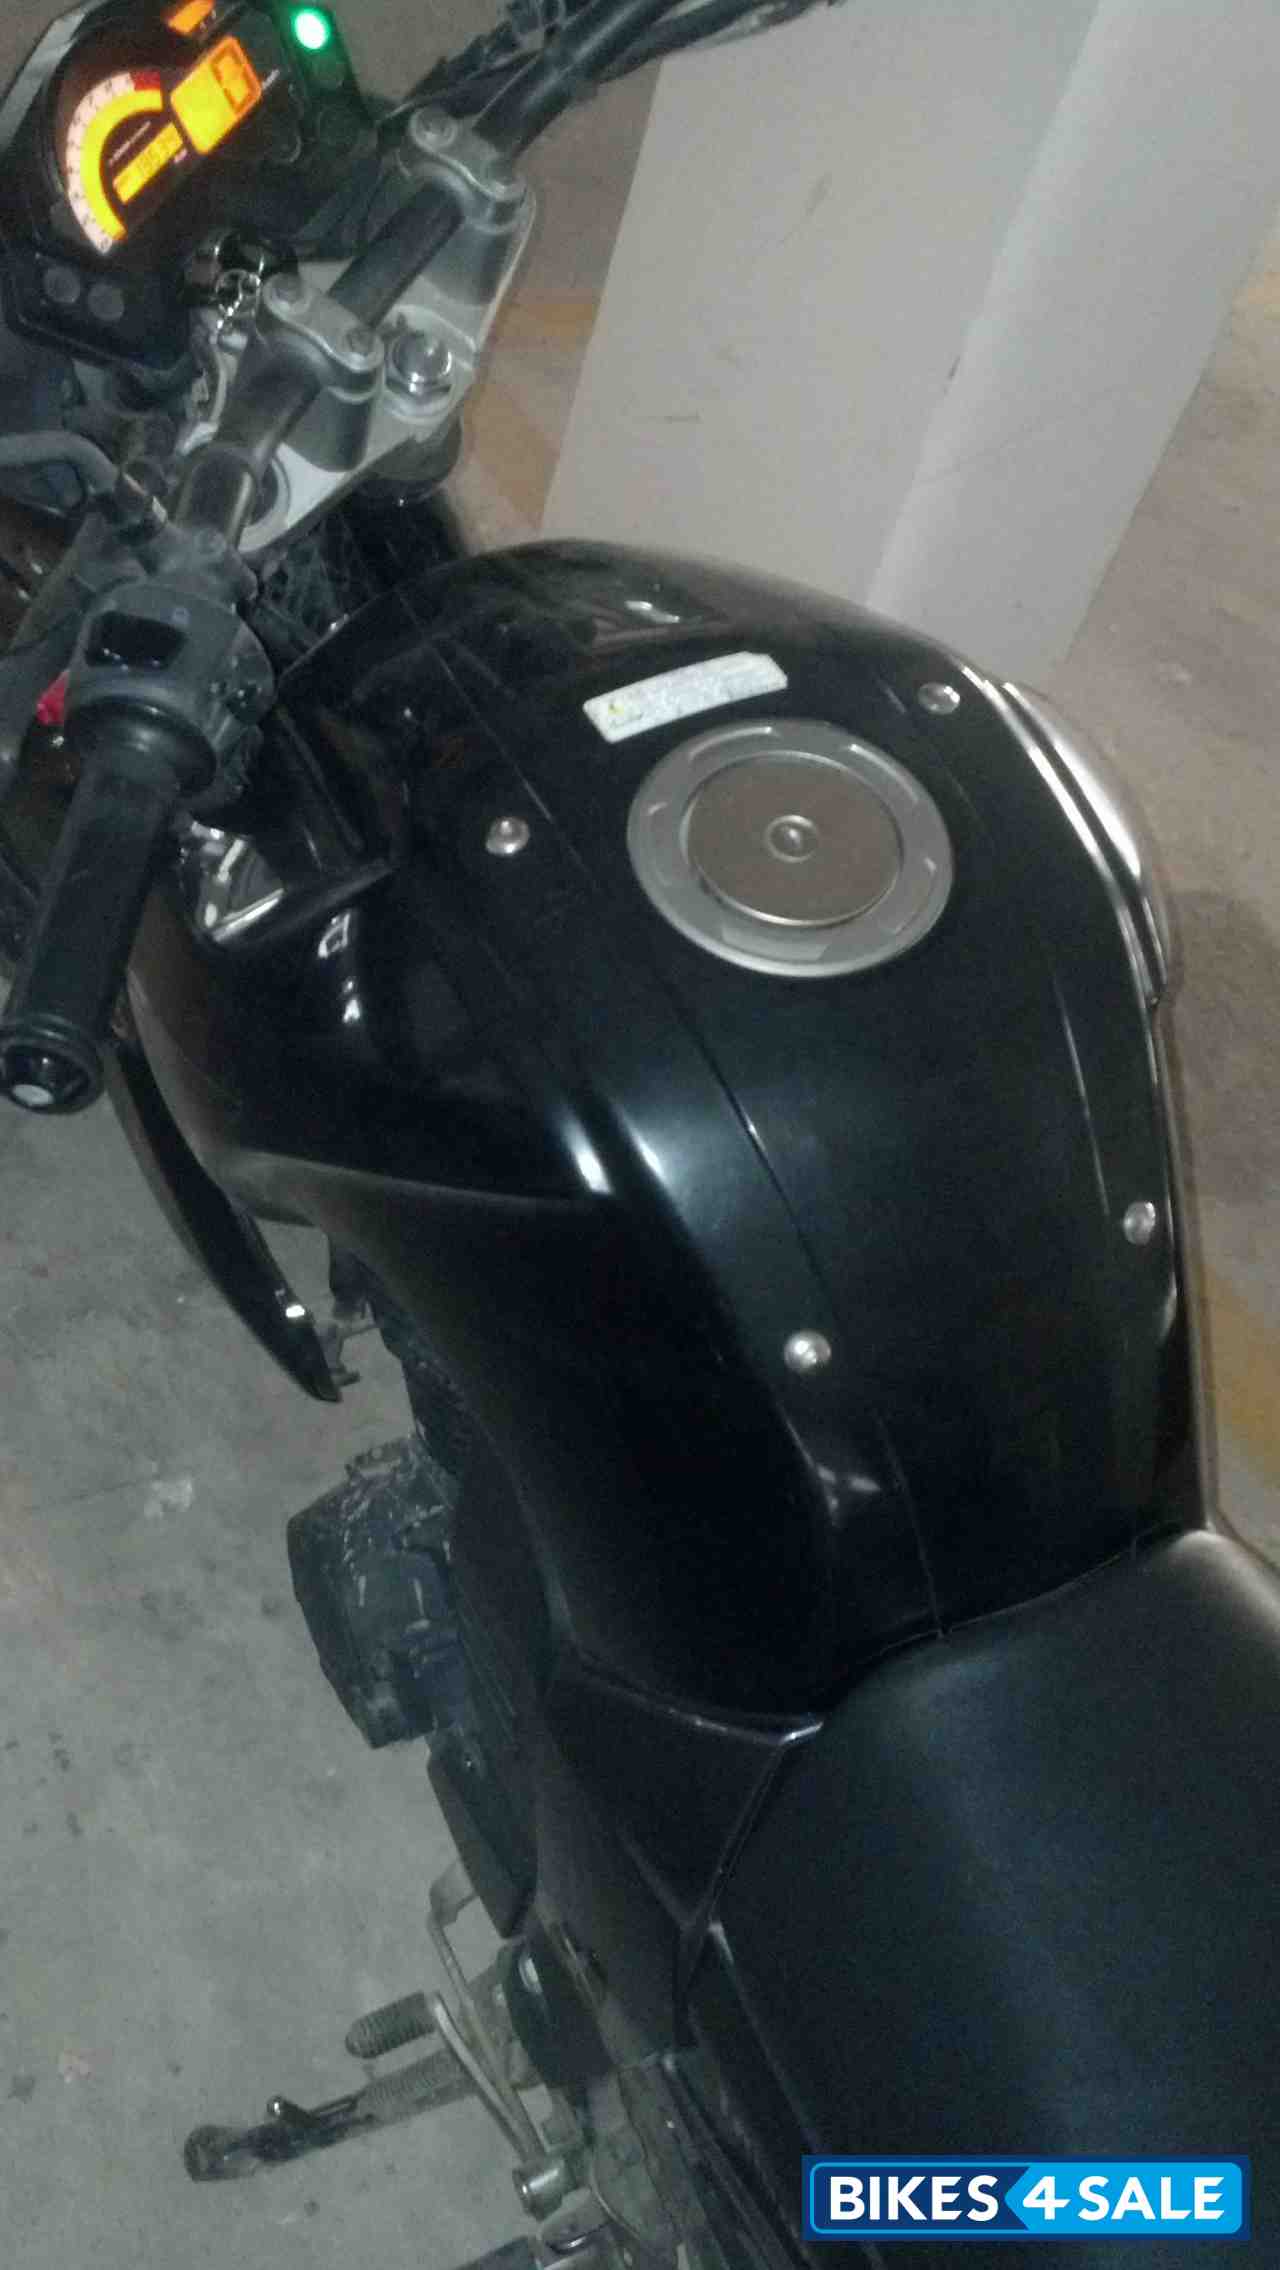 Black Yamaha FZ16